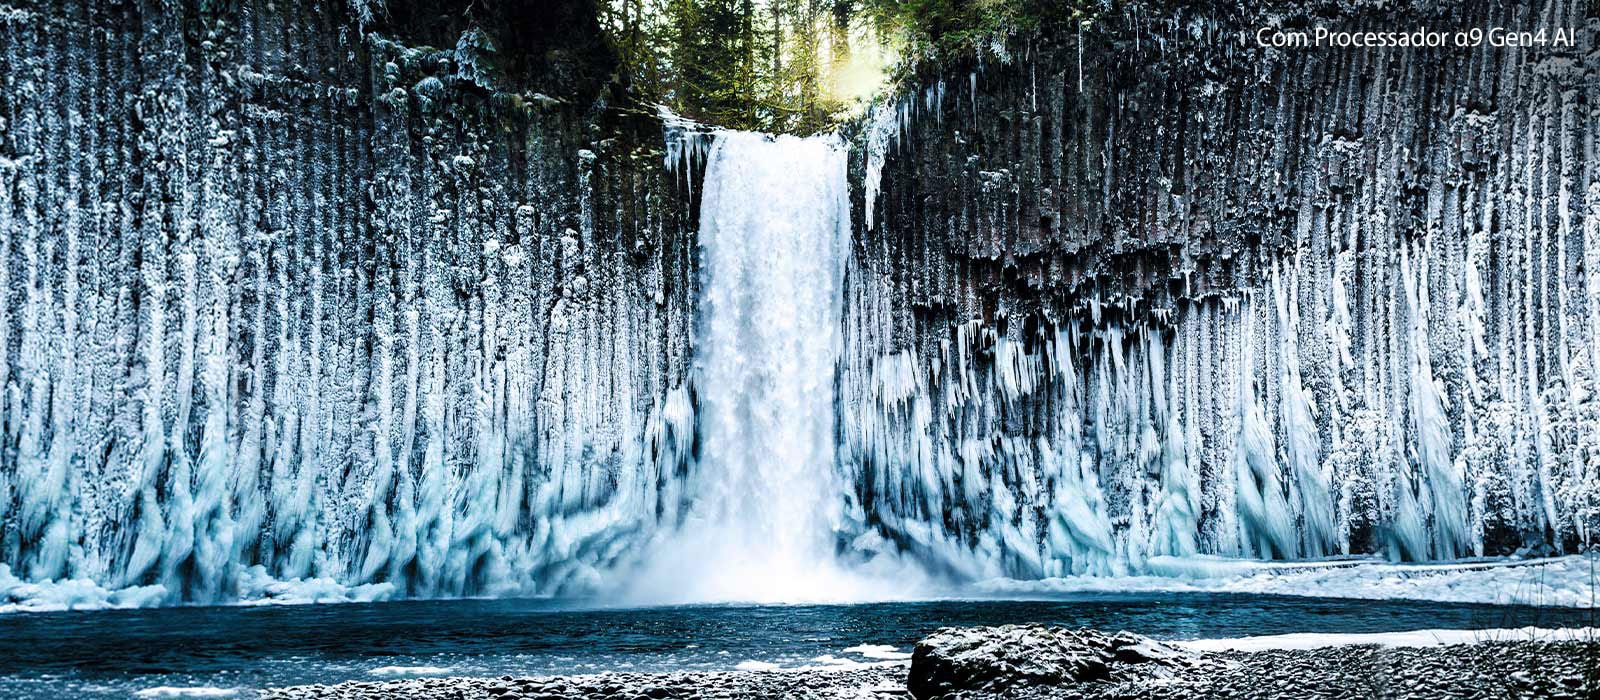 Comparação por deslocação da qualidade de imagem de uma catarata congelada numa floresta.